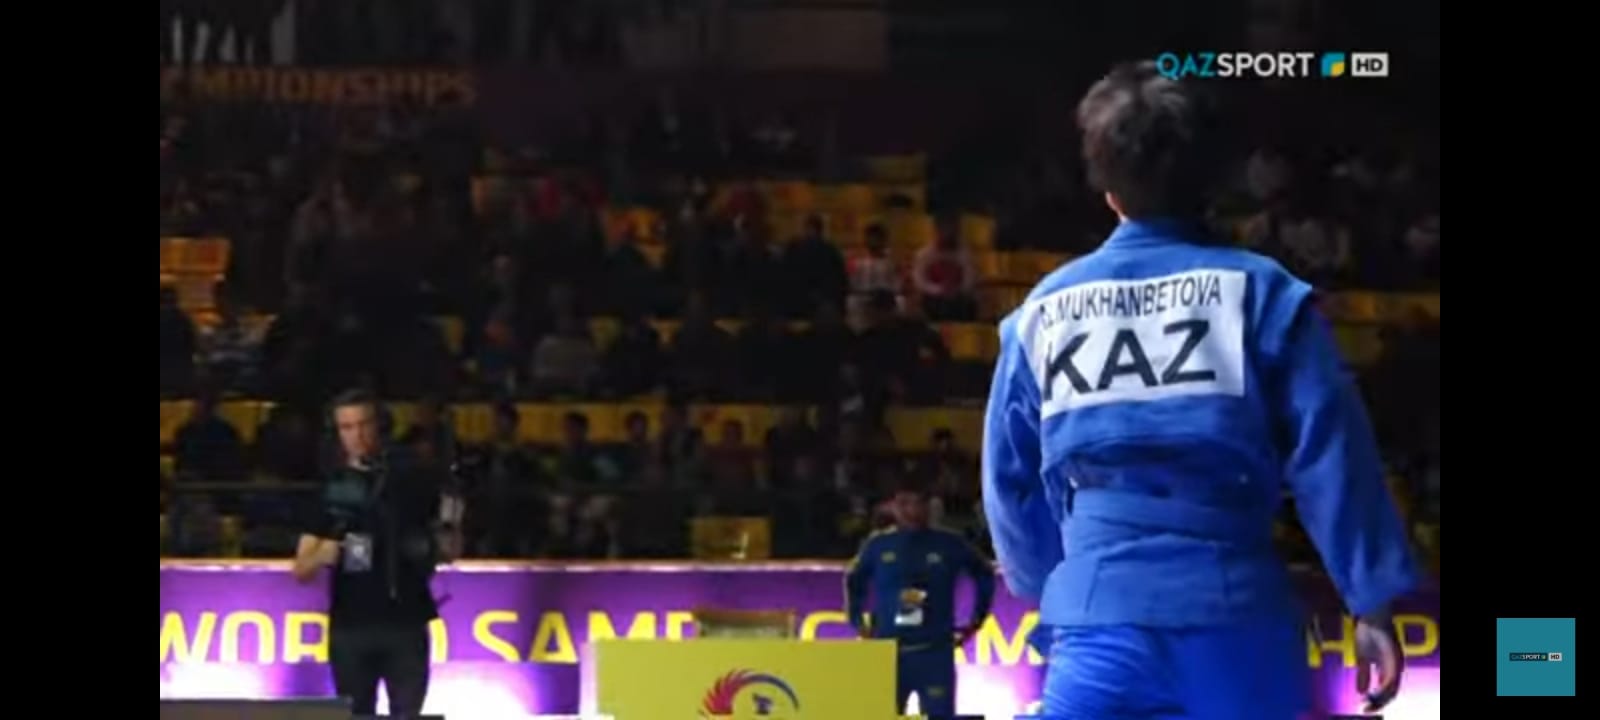 Жиырма жеті жастағы Гүлдана Әлмұханбетова самбодан әлем чемпионы атанды (видео)